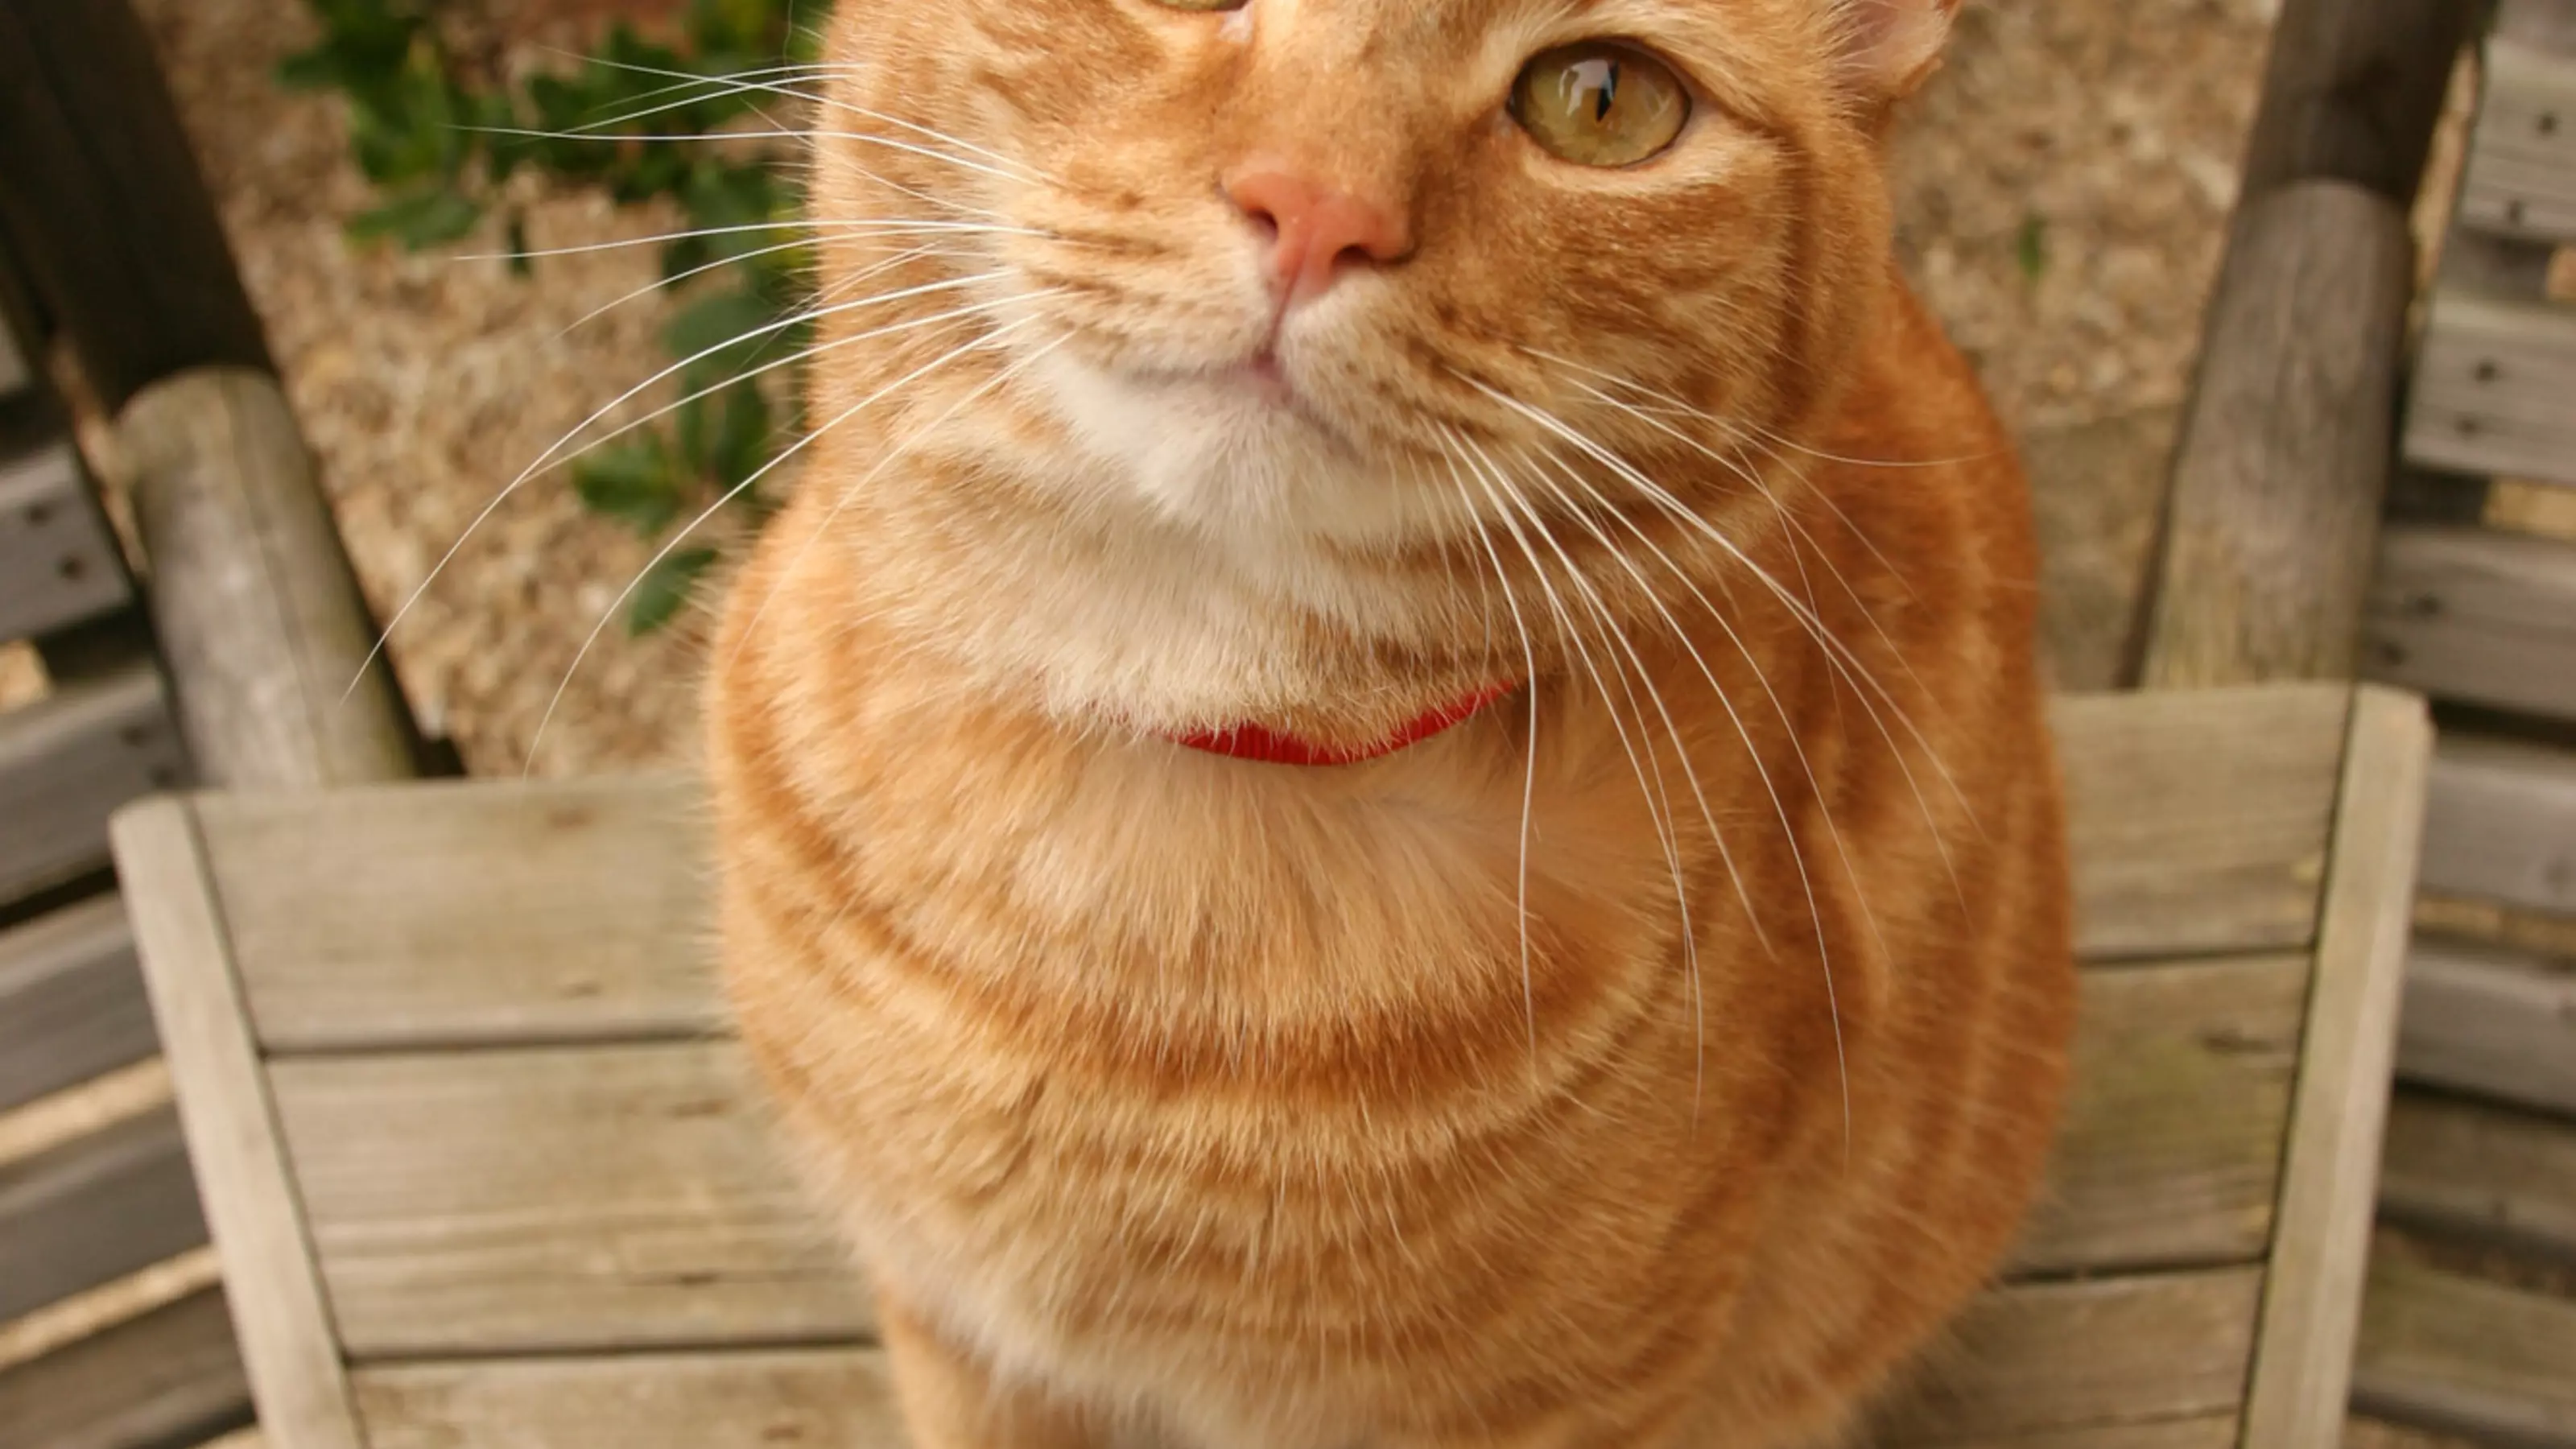 Ginger tabby cat Jaffa, belonging to Burford AWA Sarah Pook